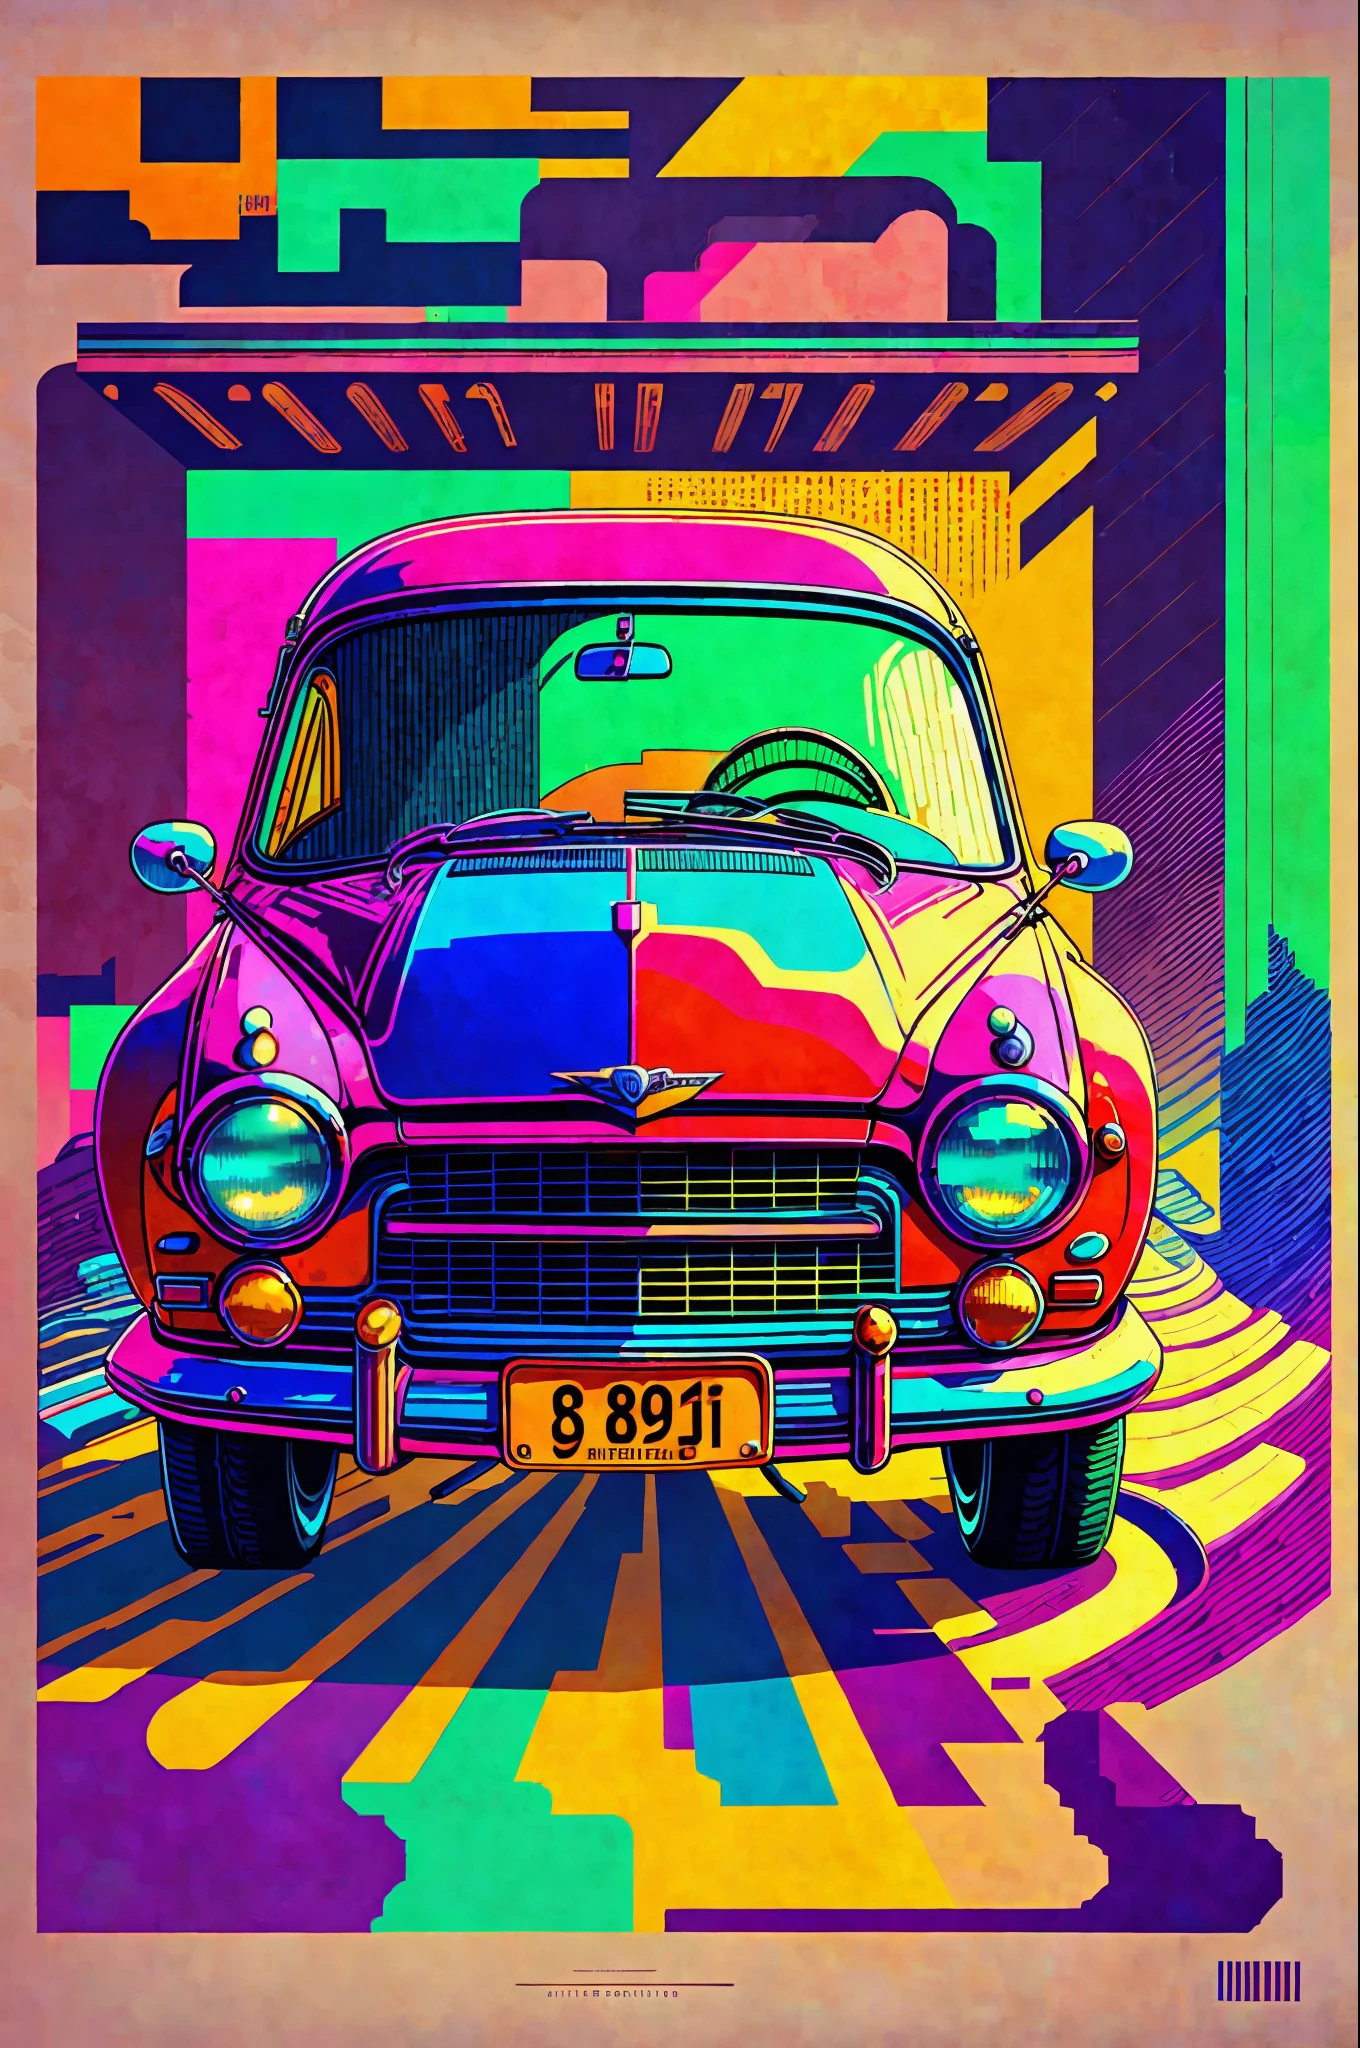 {шедевр}: пиксель 90-е car. Ретро стиль with vibrant colors. ностальгия in prints. (ширина: 800, высота: 600, Метод: Эйлер, Шаги: 20, масштаб CFG: 10, Семя: 12345, высококлассный: 2)
ТЕГИ: шедевр, машина, пиксель, 90-е, Ретро стиль, яркие цвета, ностальгия. --auto --s2